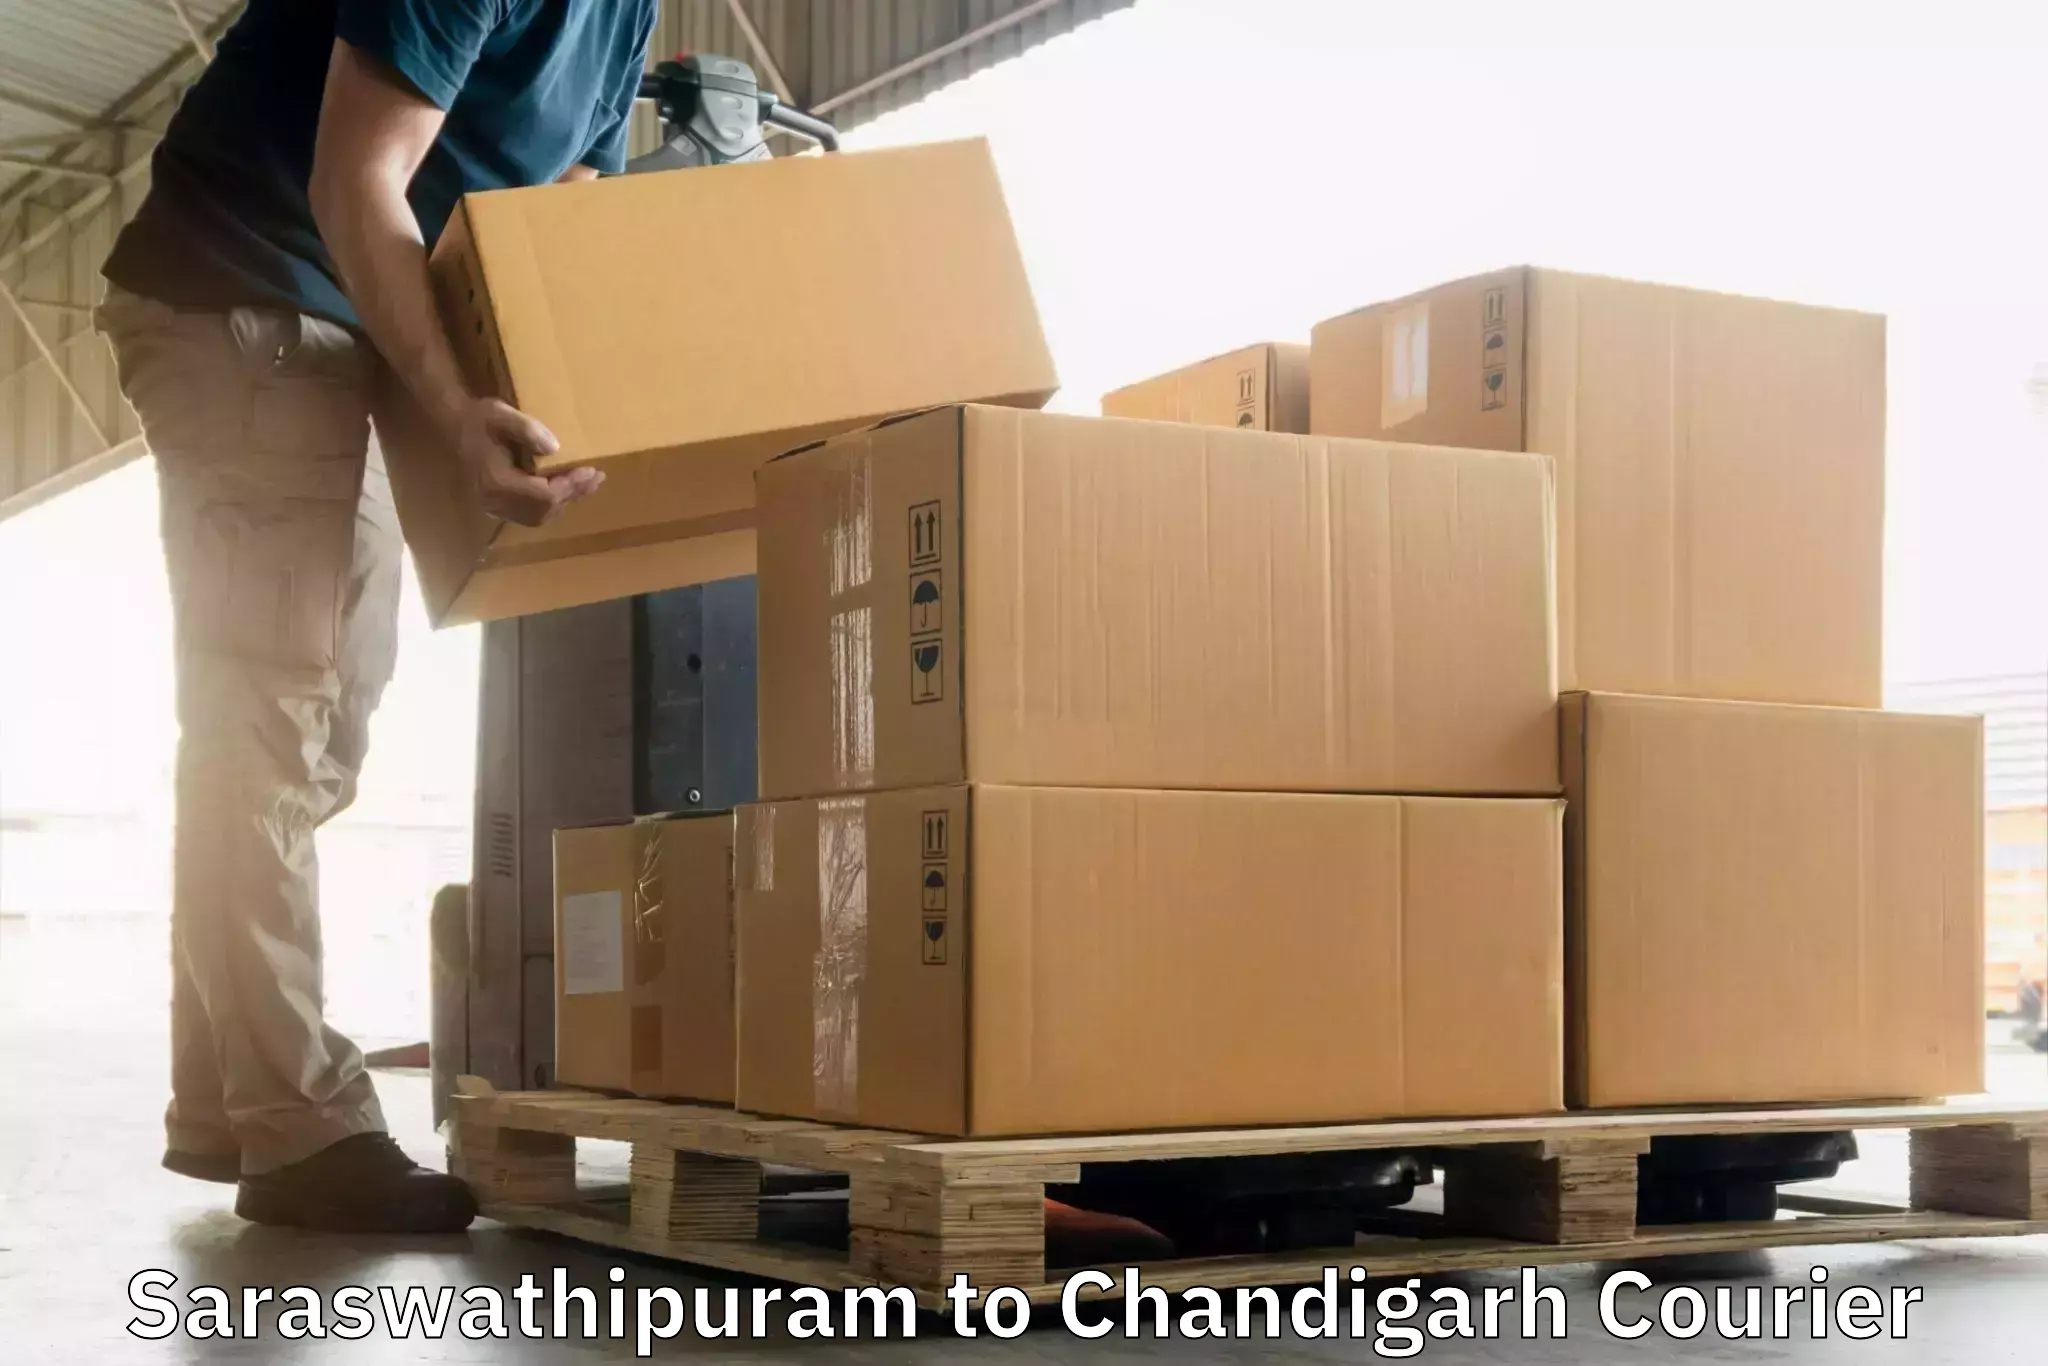 Express courier capabilities Saraswathipuram to Chandigarh